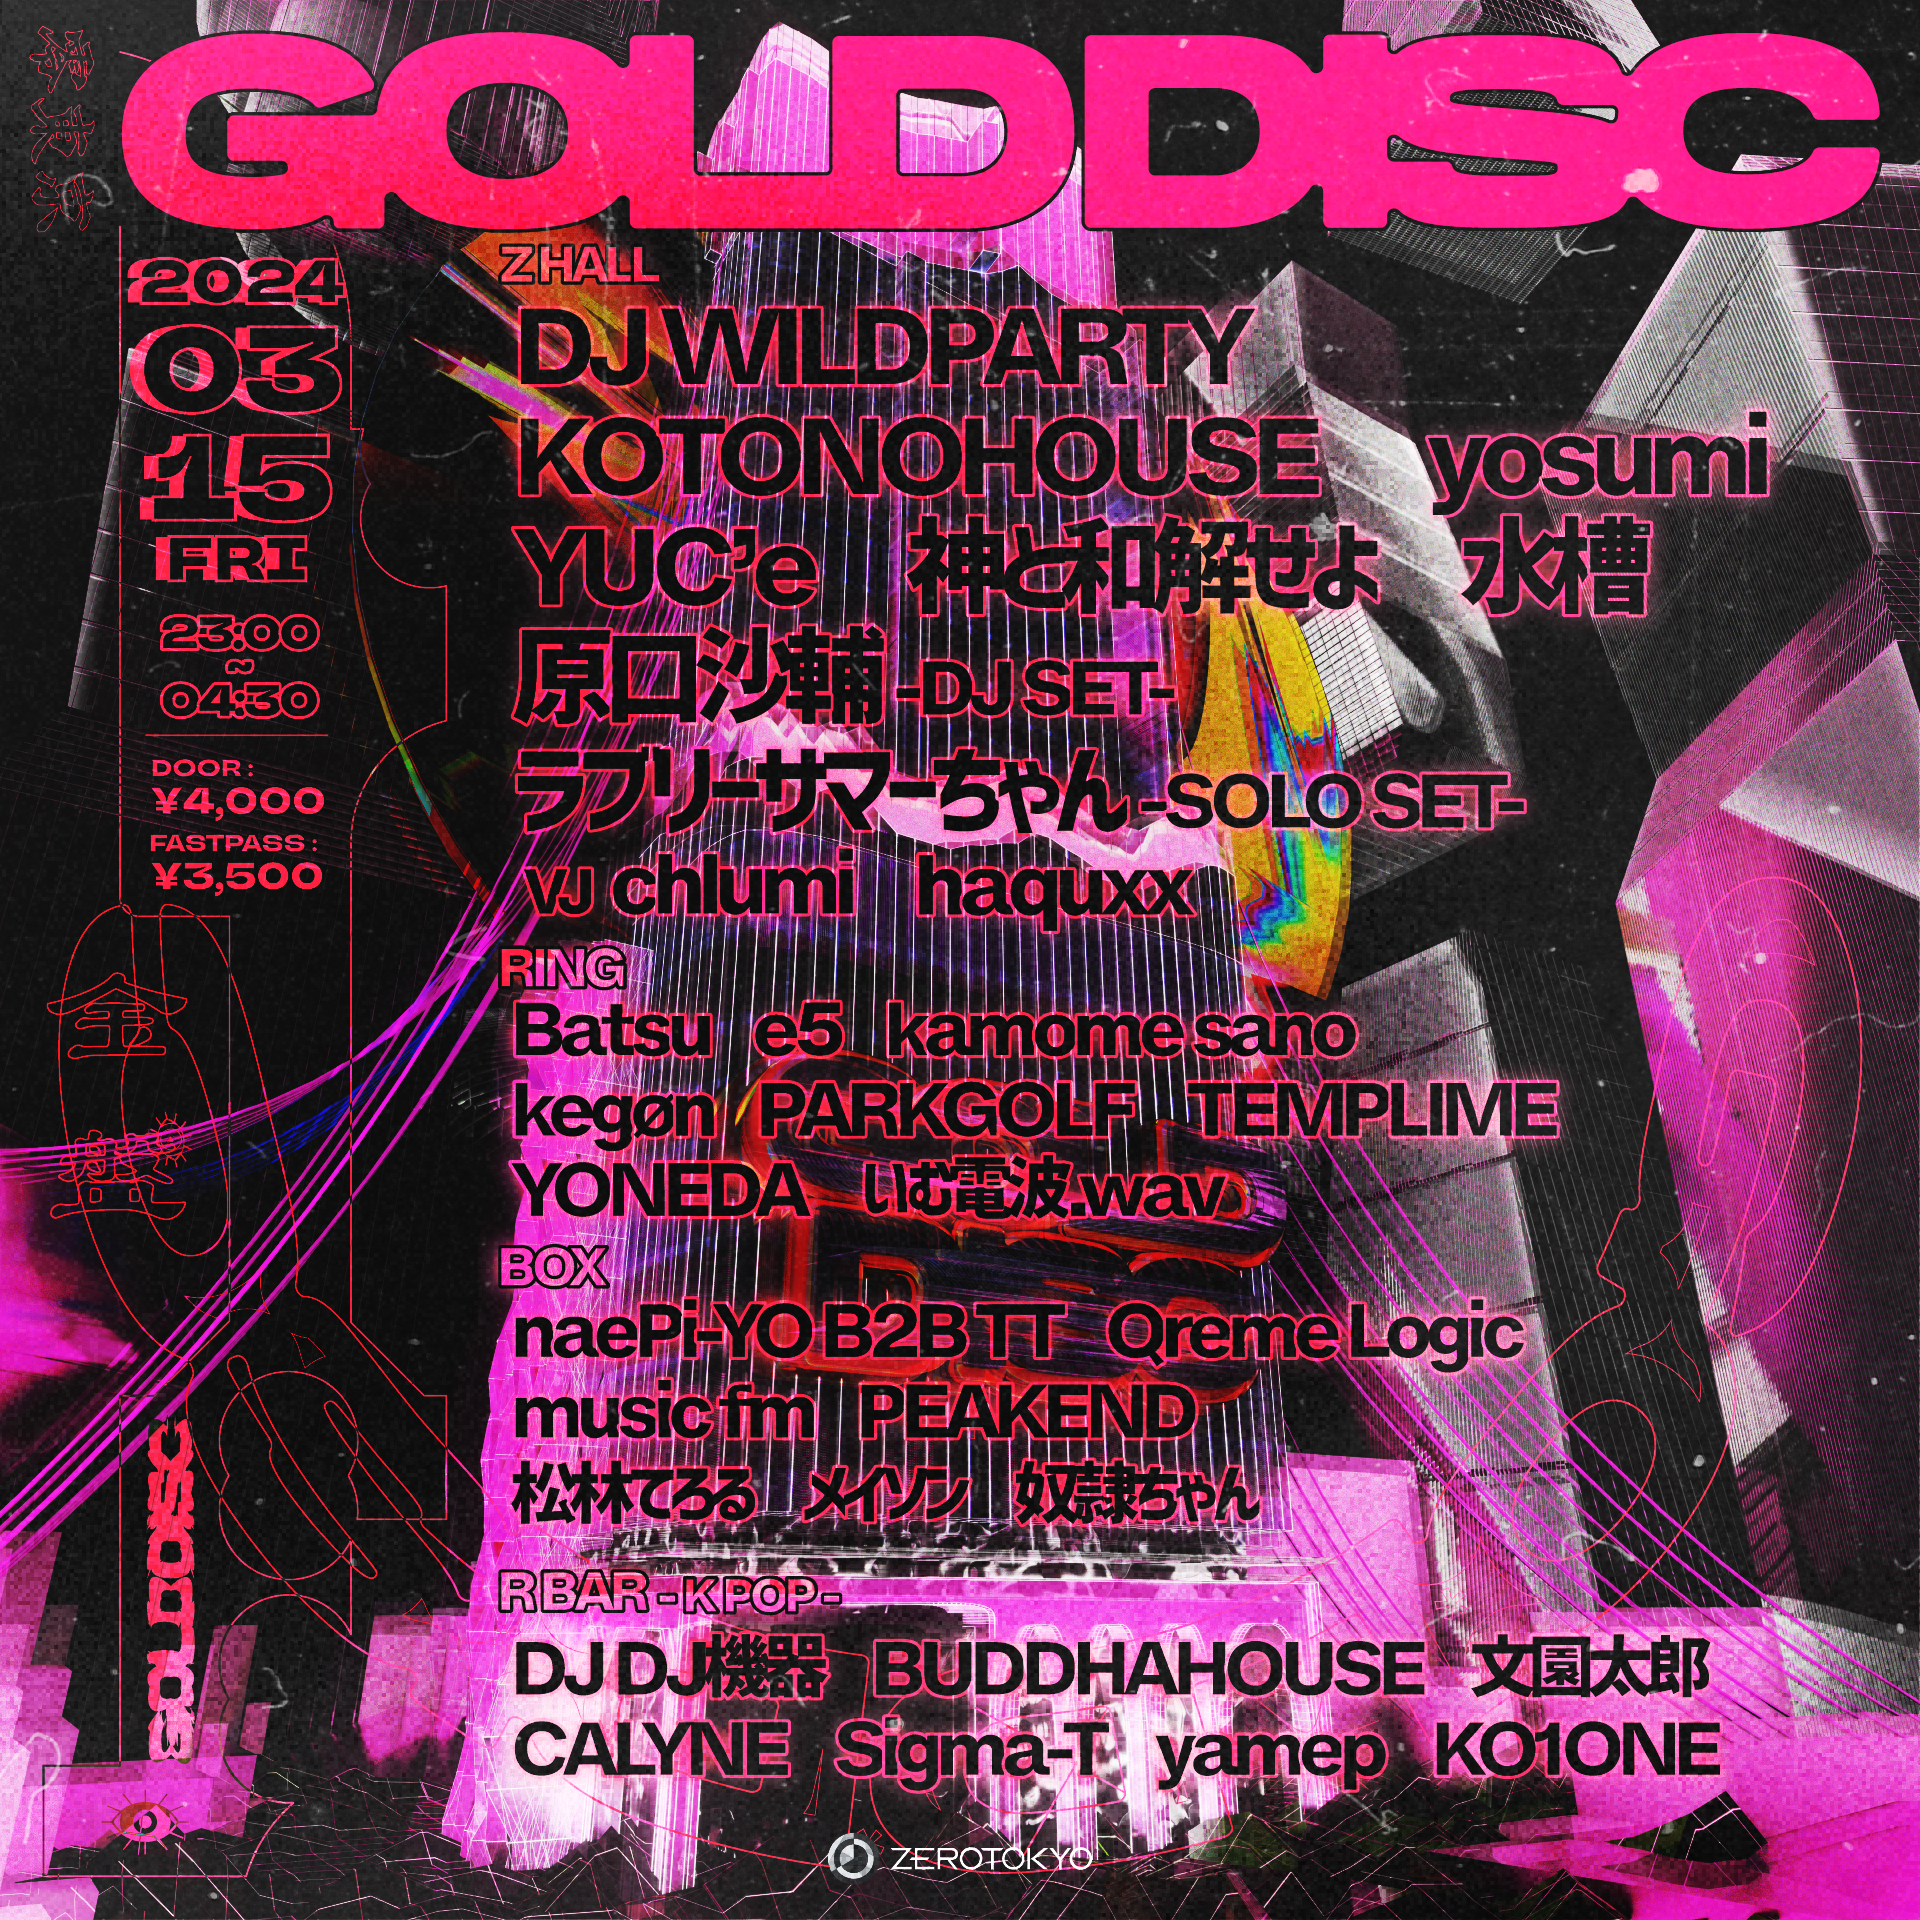 ZEROTOKYOが贈る人気パーティー「GOLD DISC」が3月15日(金)に開催！DJ WILDPARTY、KOTONOHOUSE、YUC’e、TEMPLIME、水槽、原口沙輔,ラブリーサマーちゃんなど豪華アーティストが多数集結！